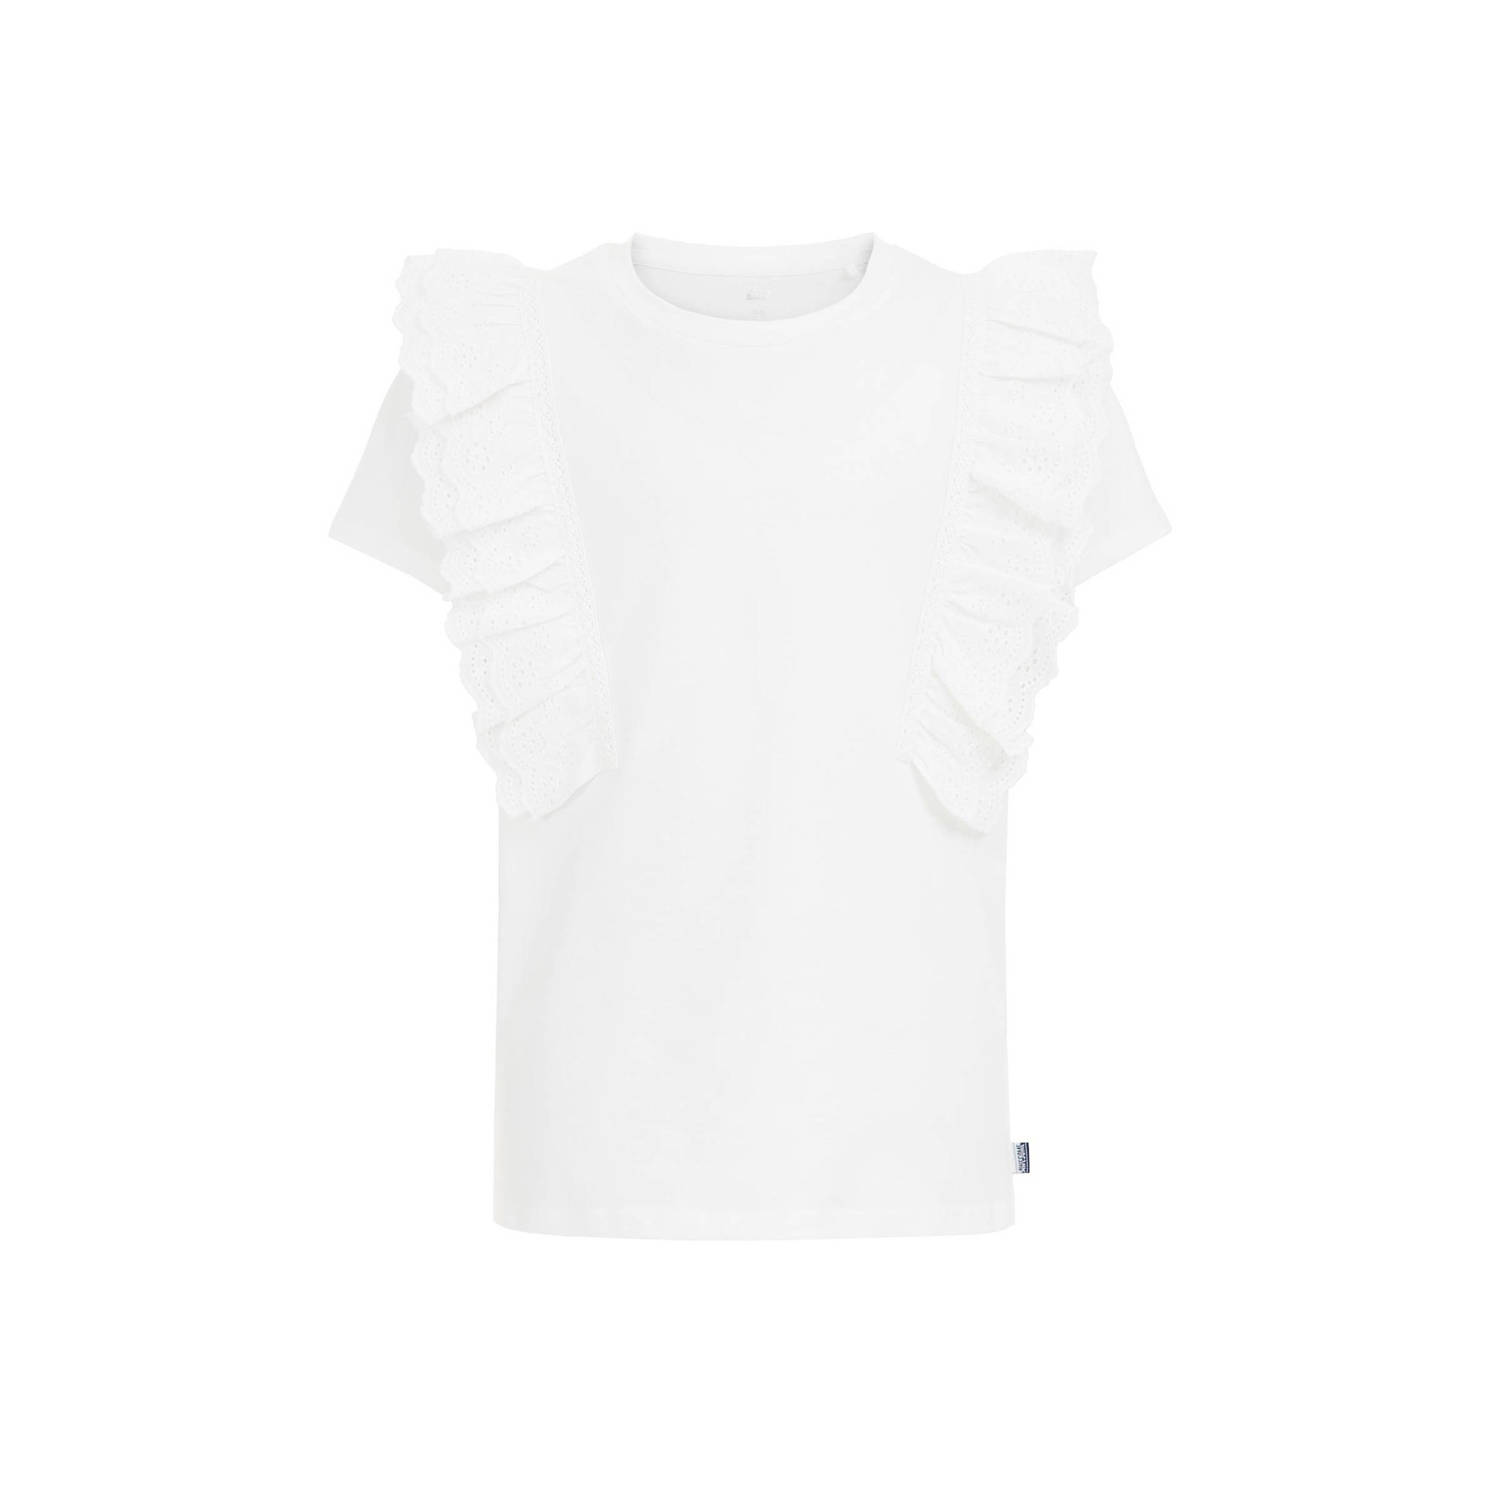 WE Fashion T-shirt wit Top Meisjes Biologisch katoen Ronde hals Effen 110 116